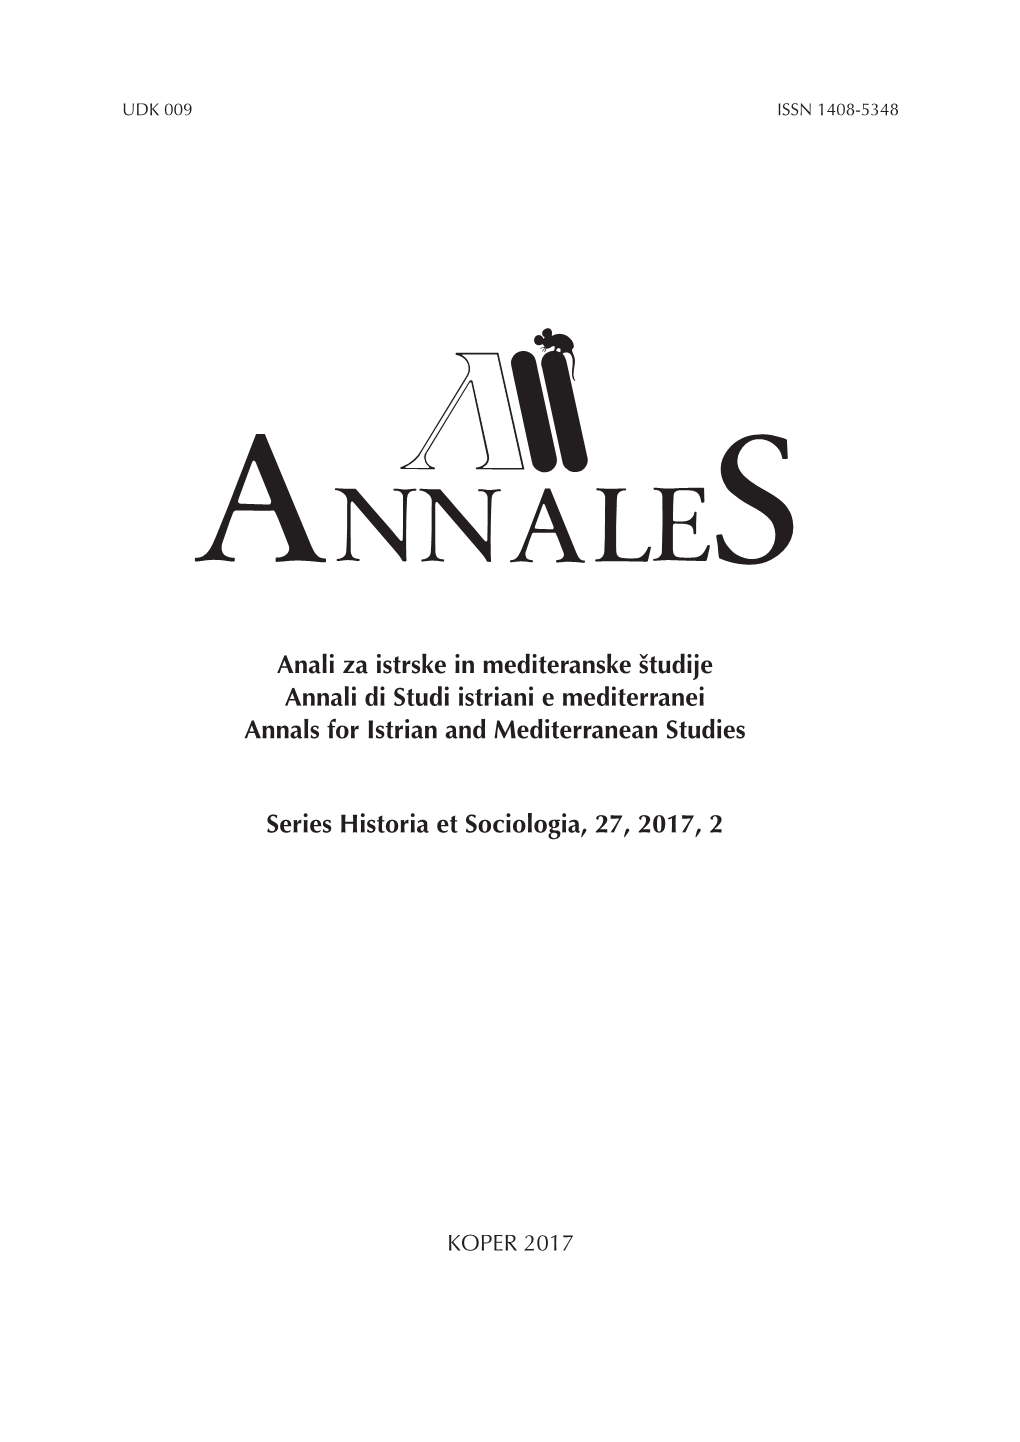 Annales, Series Historia Et Sociologia 27, 2017, 2